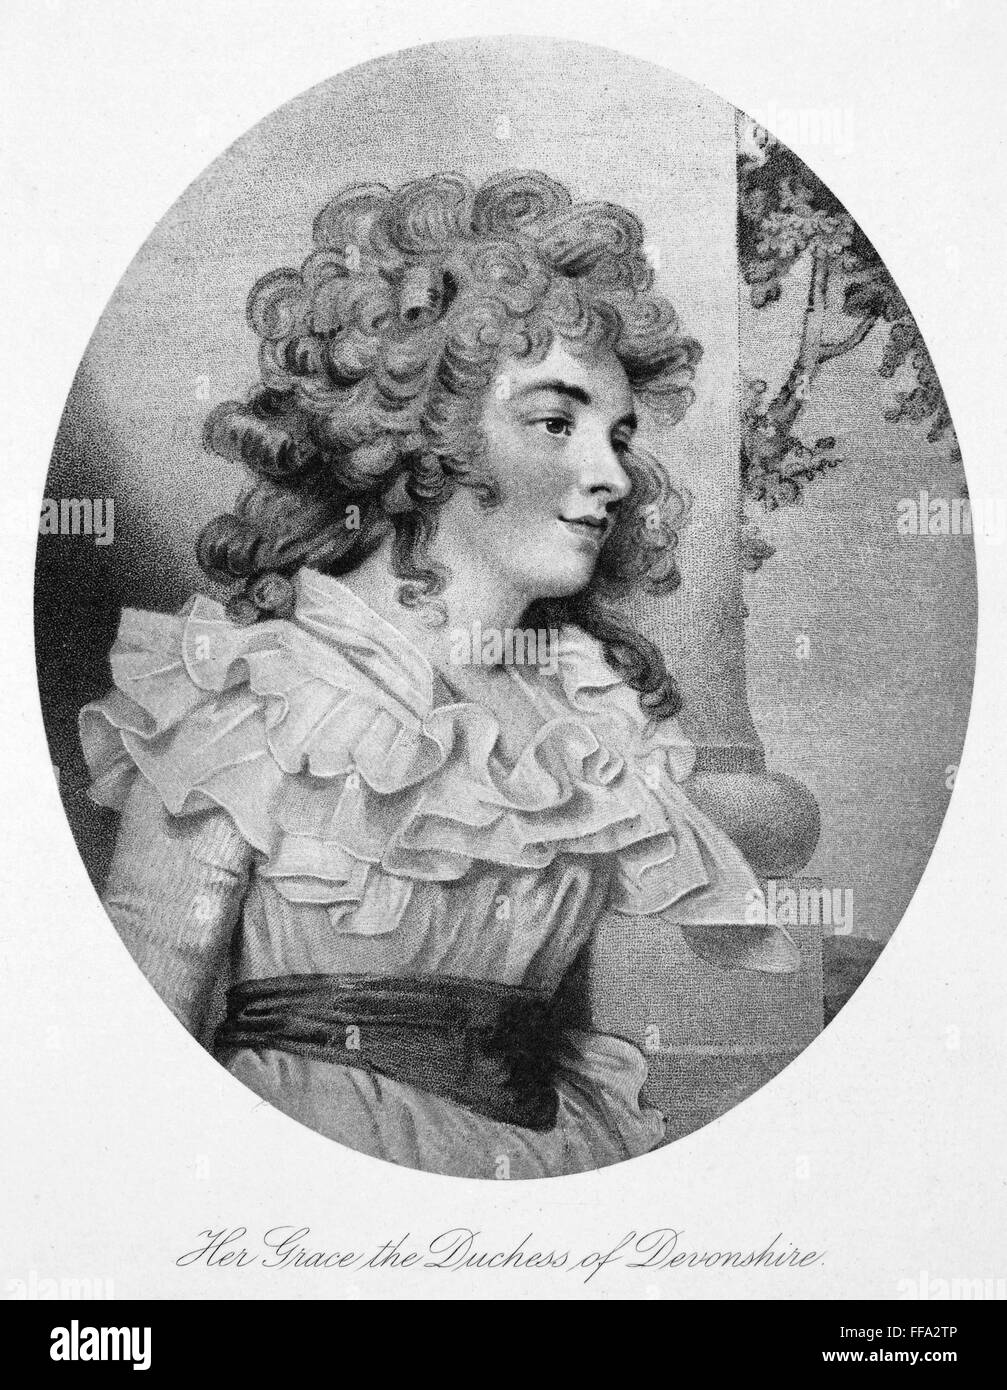 GEORGIANA SPENCER (1757-1806). /nDuchess of Devonshire. Aquatint, c1800. Stock Photo